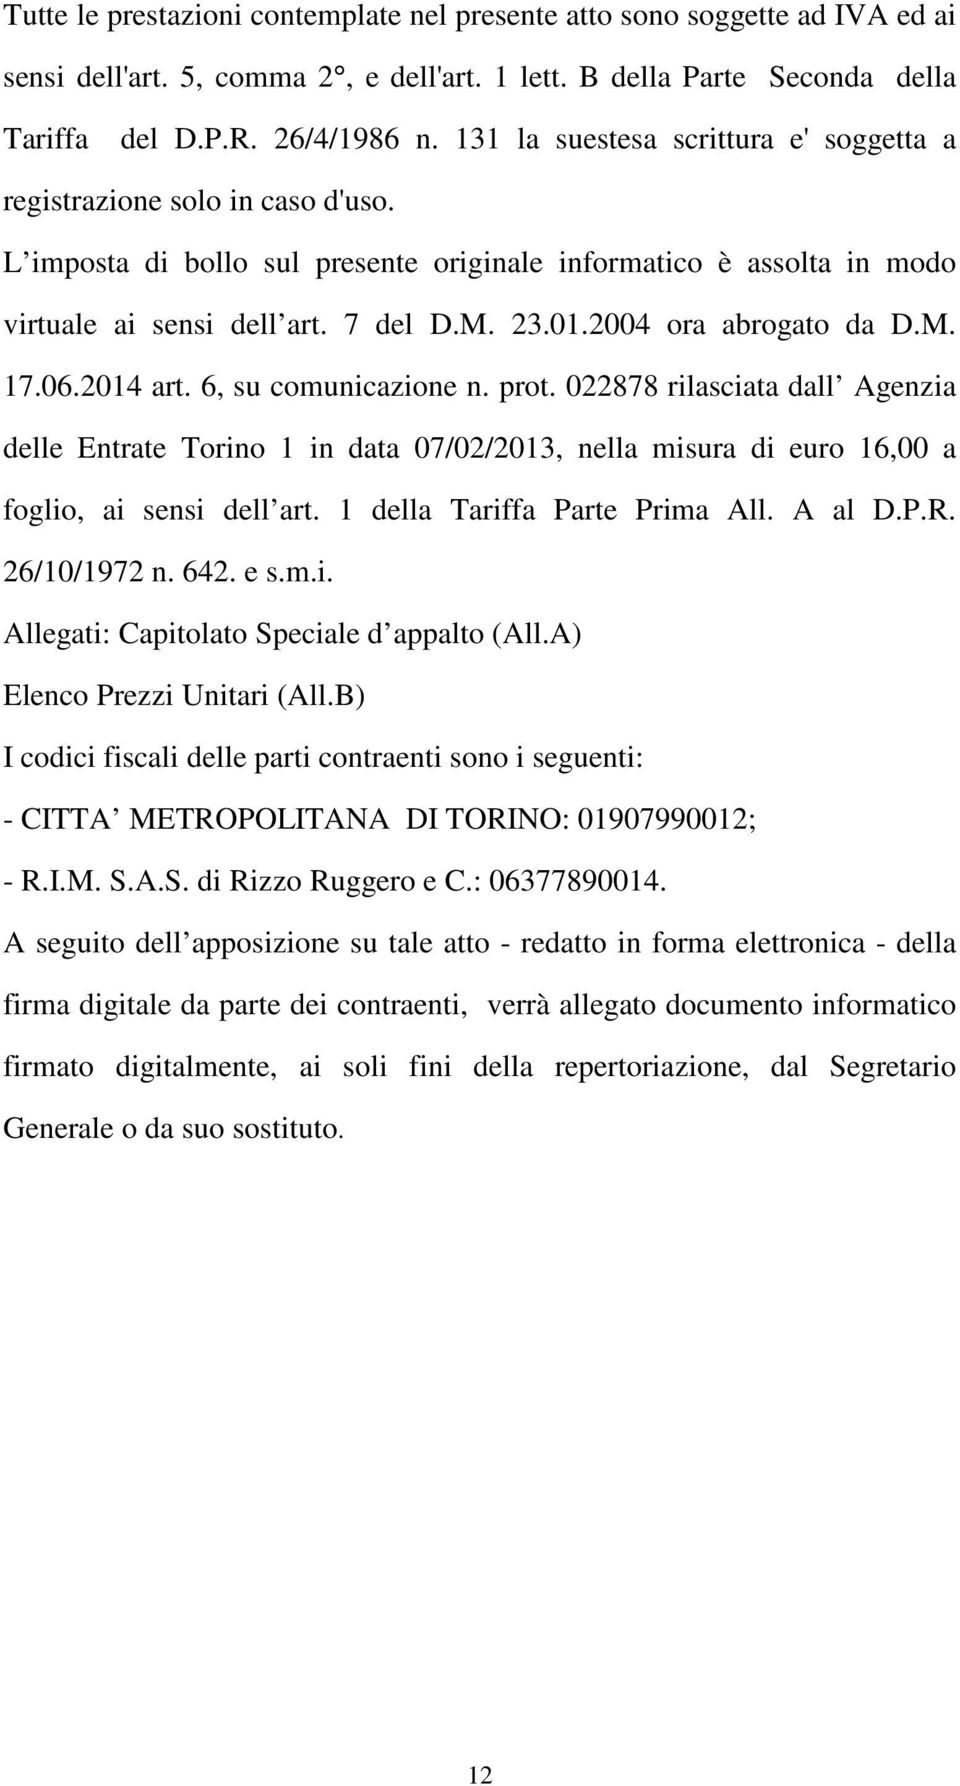 2004 ora abrogato da D.M. 17.06.2014 art. 6, su comunicazione n. prot. 022878 rilasciata dall Agenzia delle Entrate Torino 1 in data 07/02/2013, nella misura di euro 16,00 a foglio, ai sensi dell art.